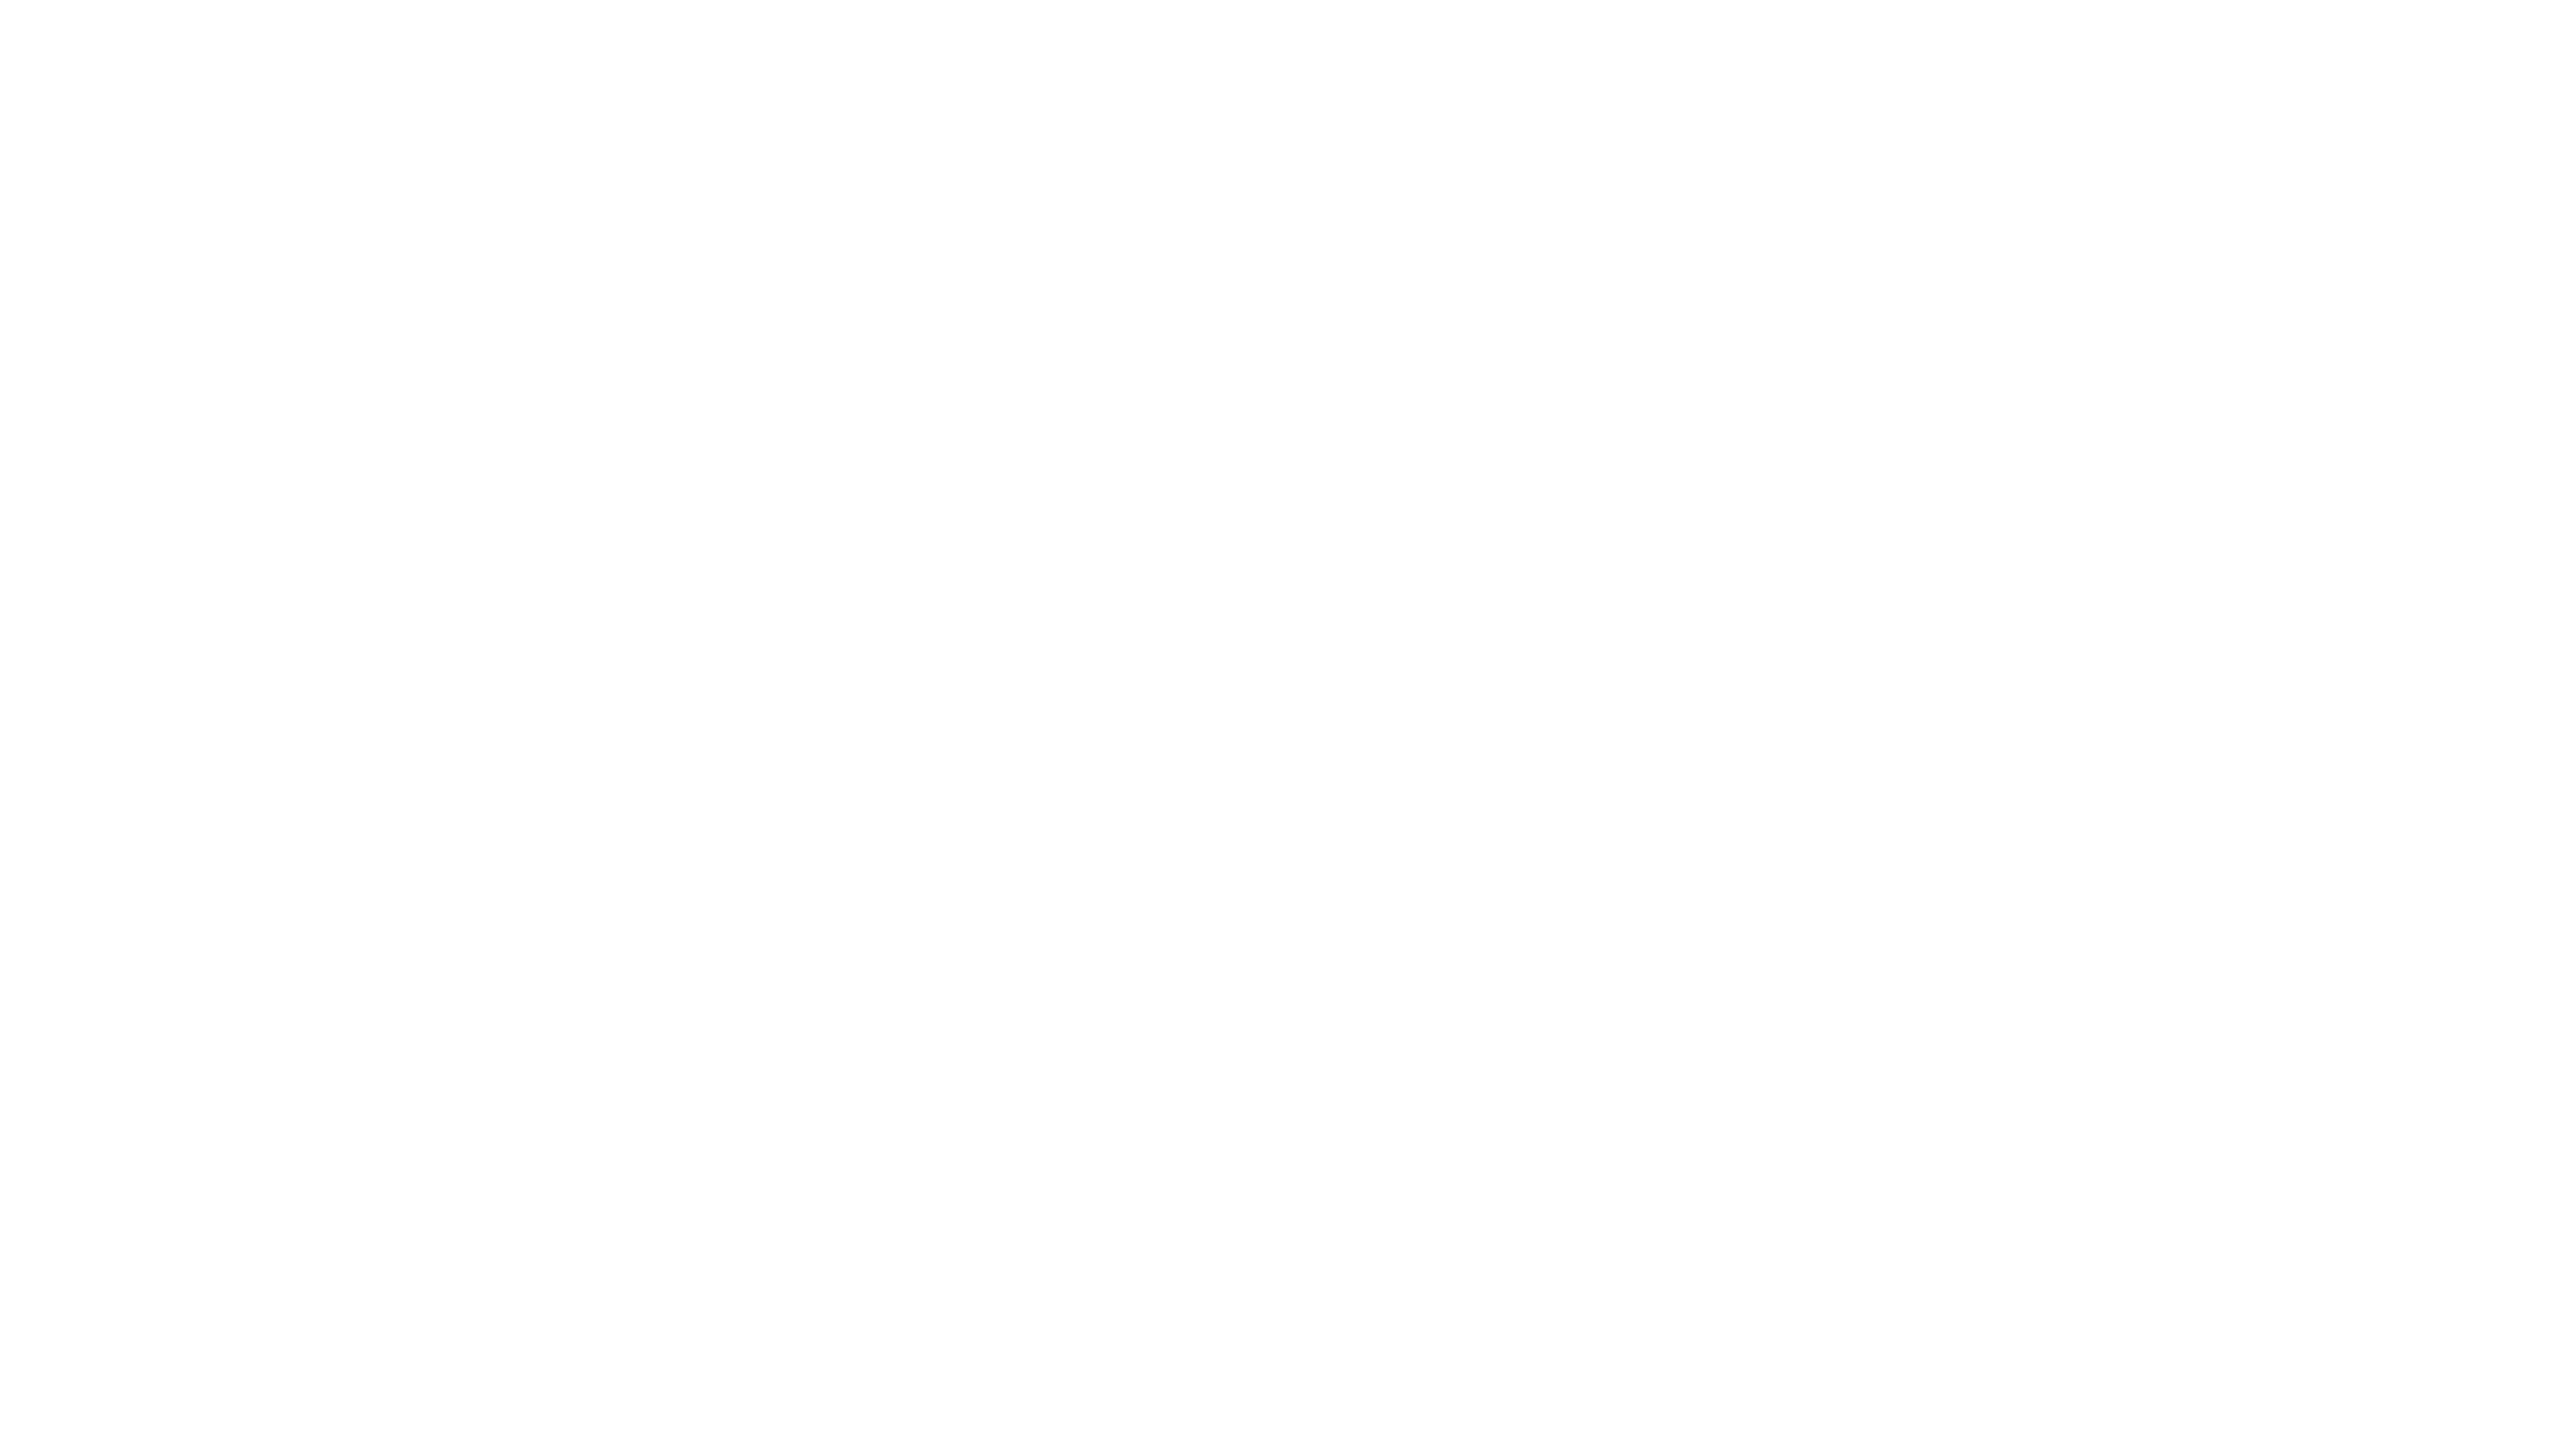 Institute of Jamaica